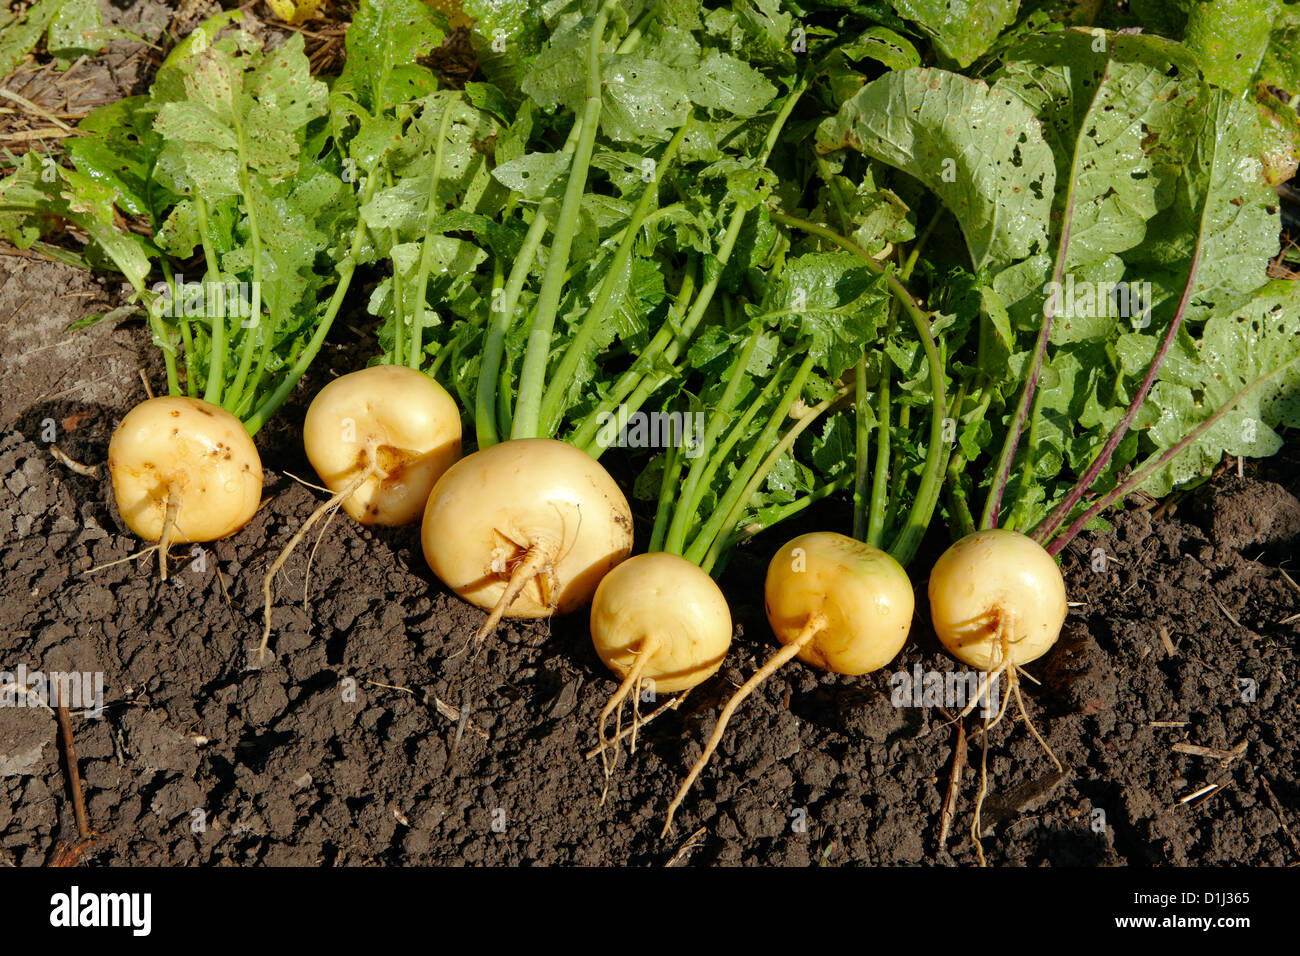 Frisch geerntete, biologisch angebaute Rüben. Wissenschaftlicher Name: Brassica rapa oder Brassica campestris L. Stockfoto